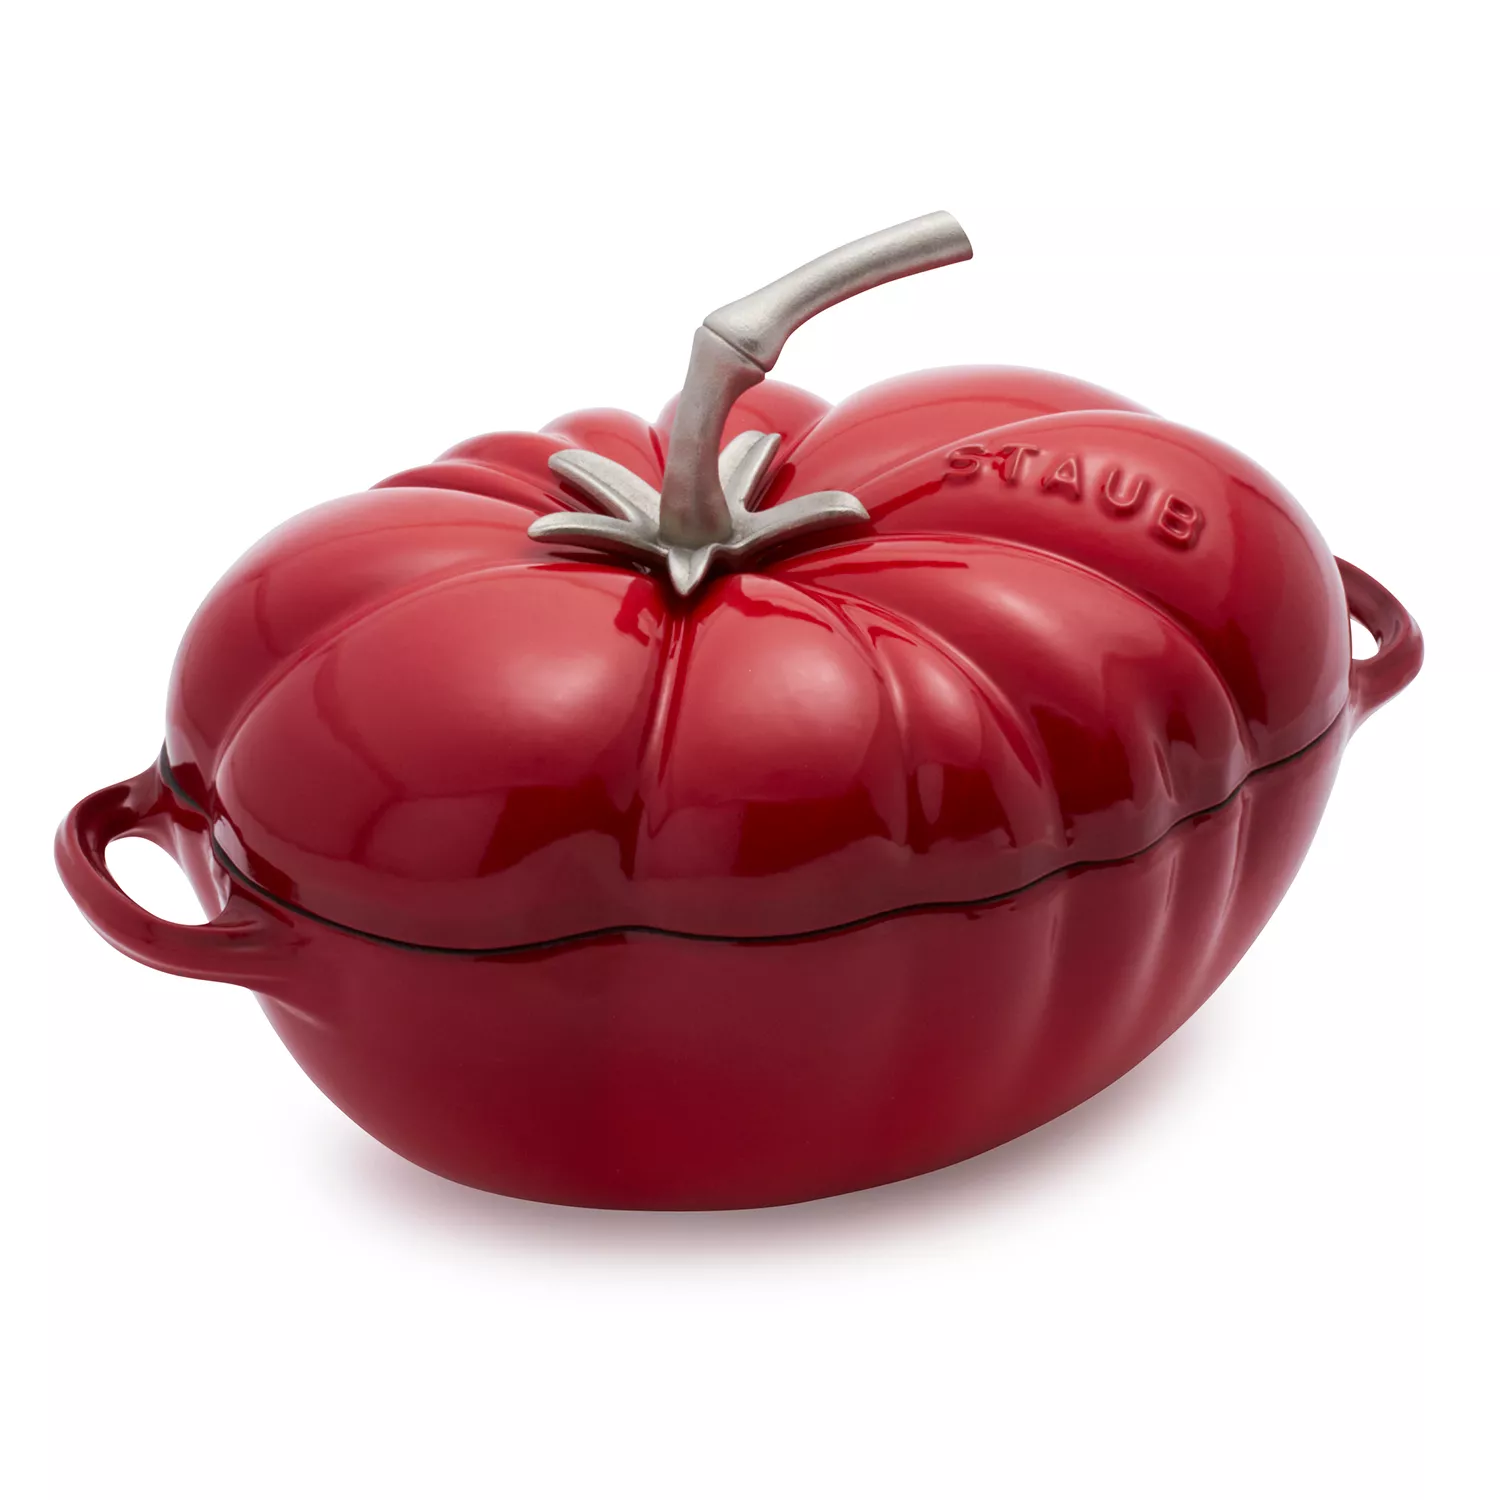 Photos - Terrine / Cauldron Staub Tomato Dutch Oven 11712506 